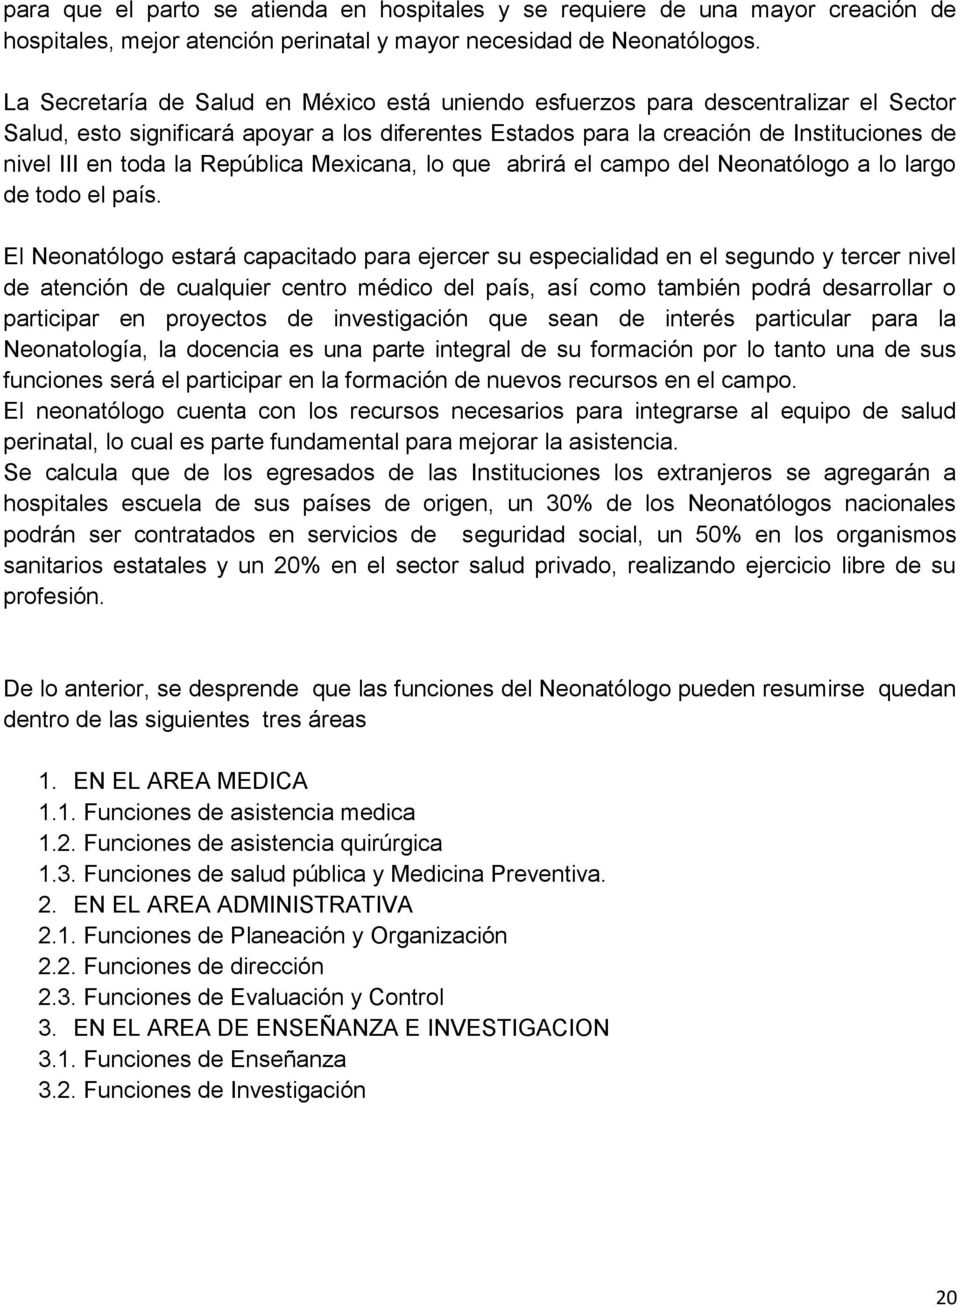 República Mexicana, lo que abrirá el campo del Neonatólogo a lo largo de todo el país.